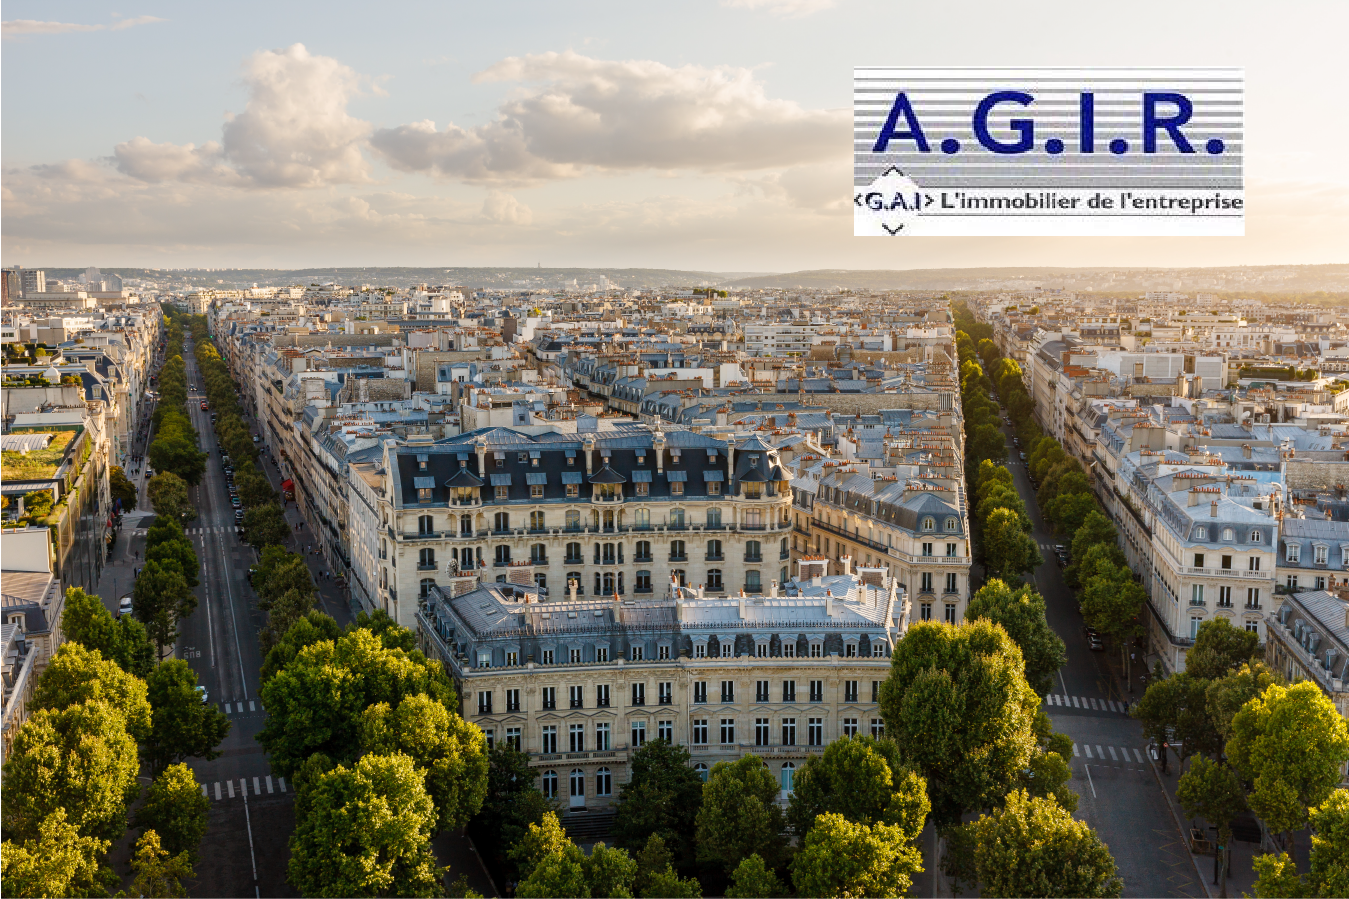 AGIR GEOLOCAUX Location vente bureaux locaux commerciaux immobilier d'entreprise paris